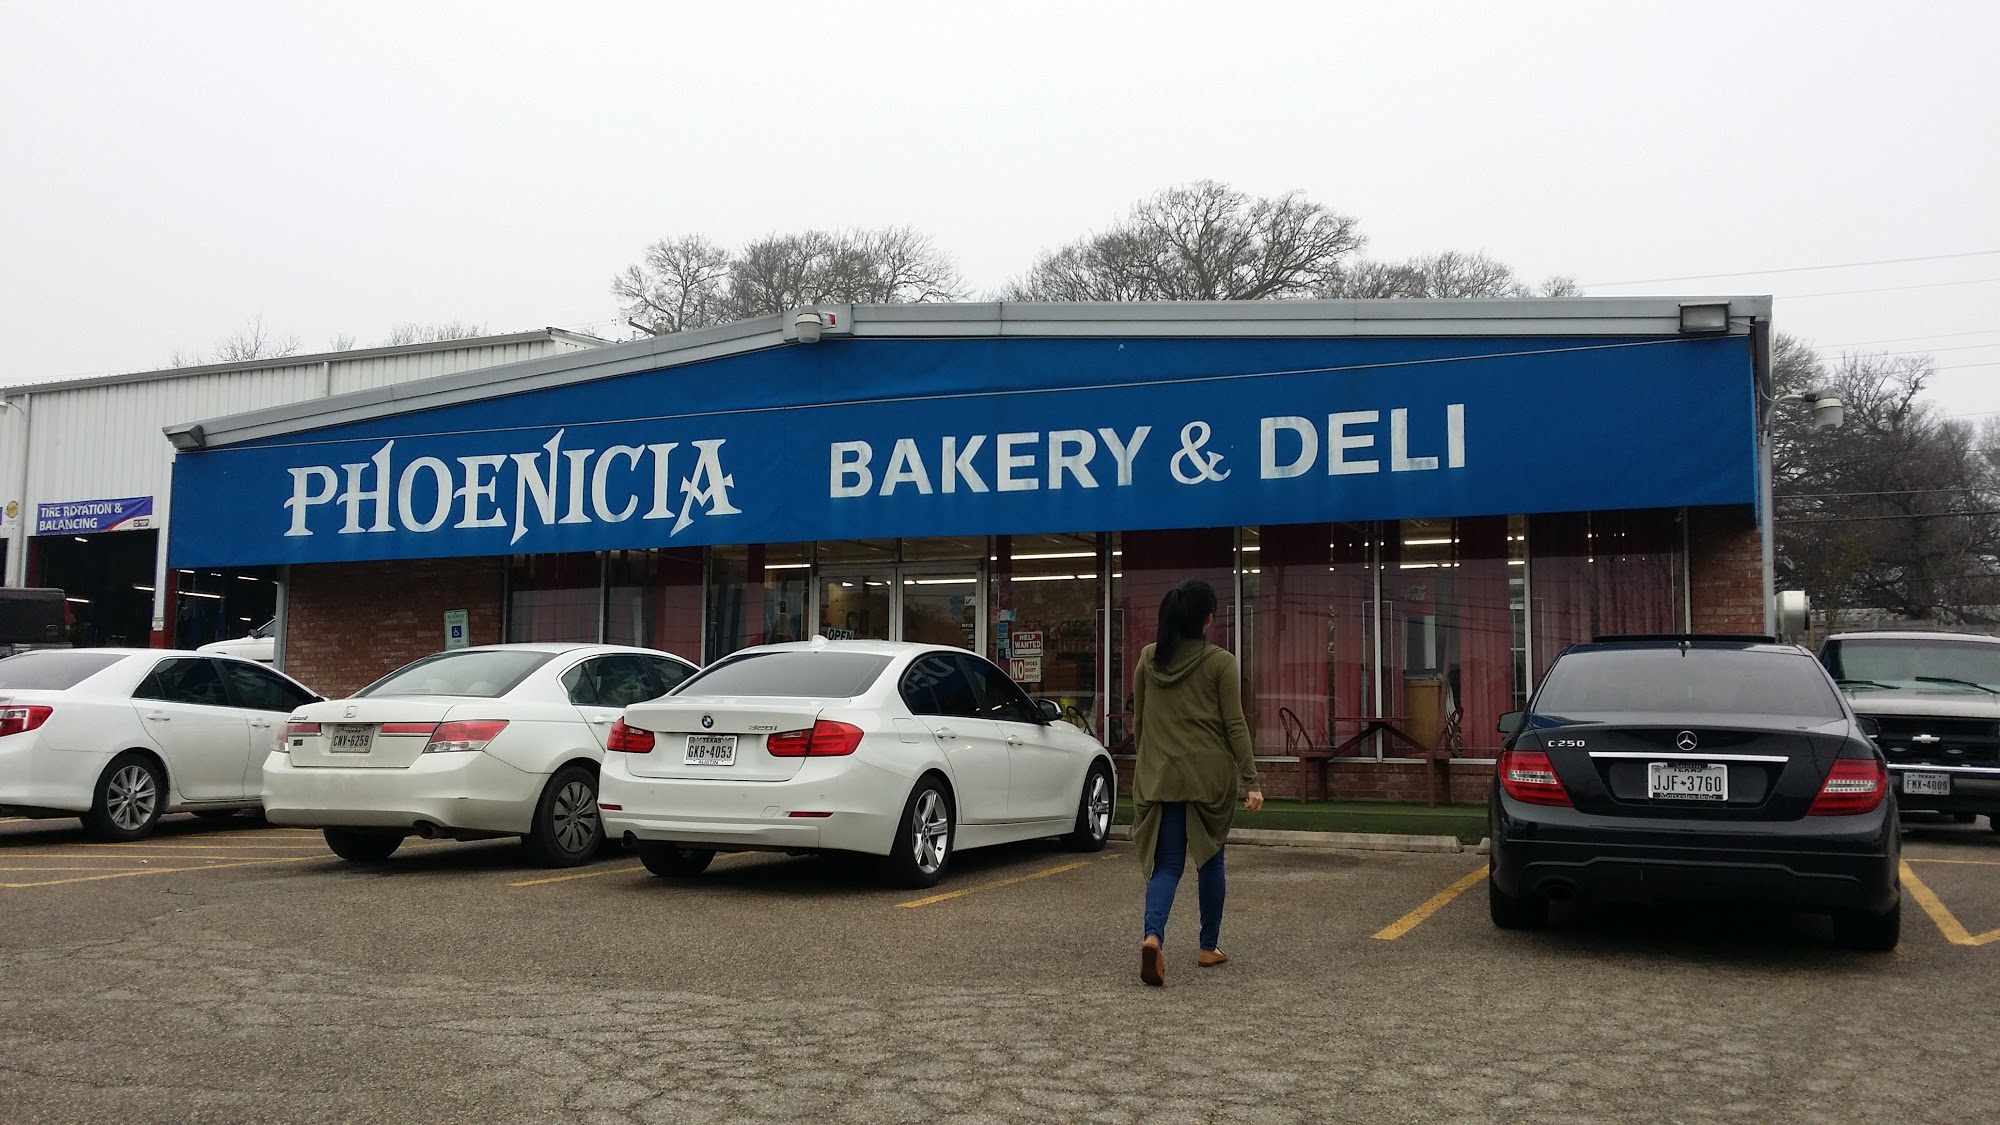 Phoenicia Bakery & Deli